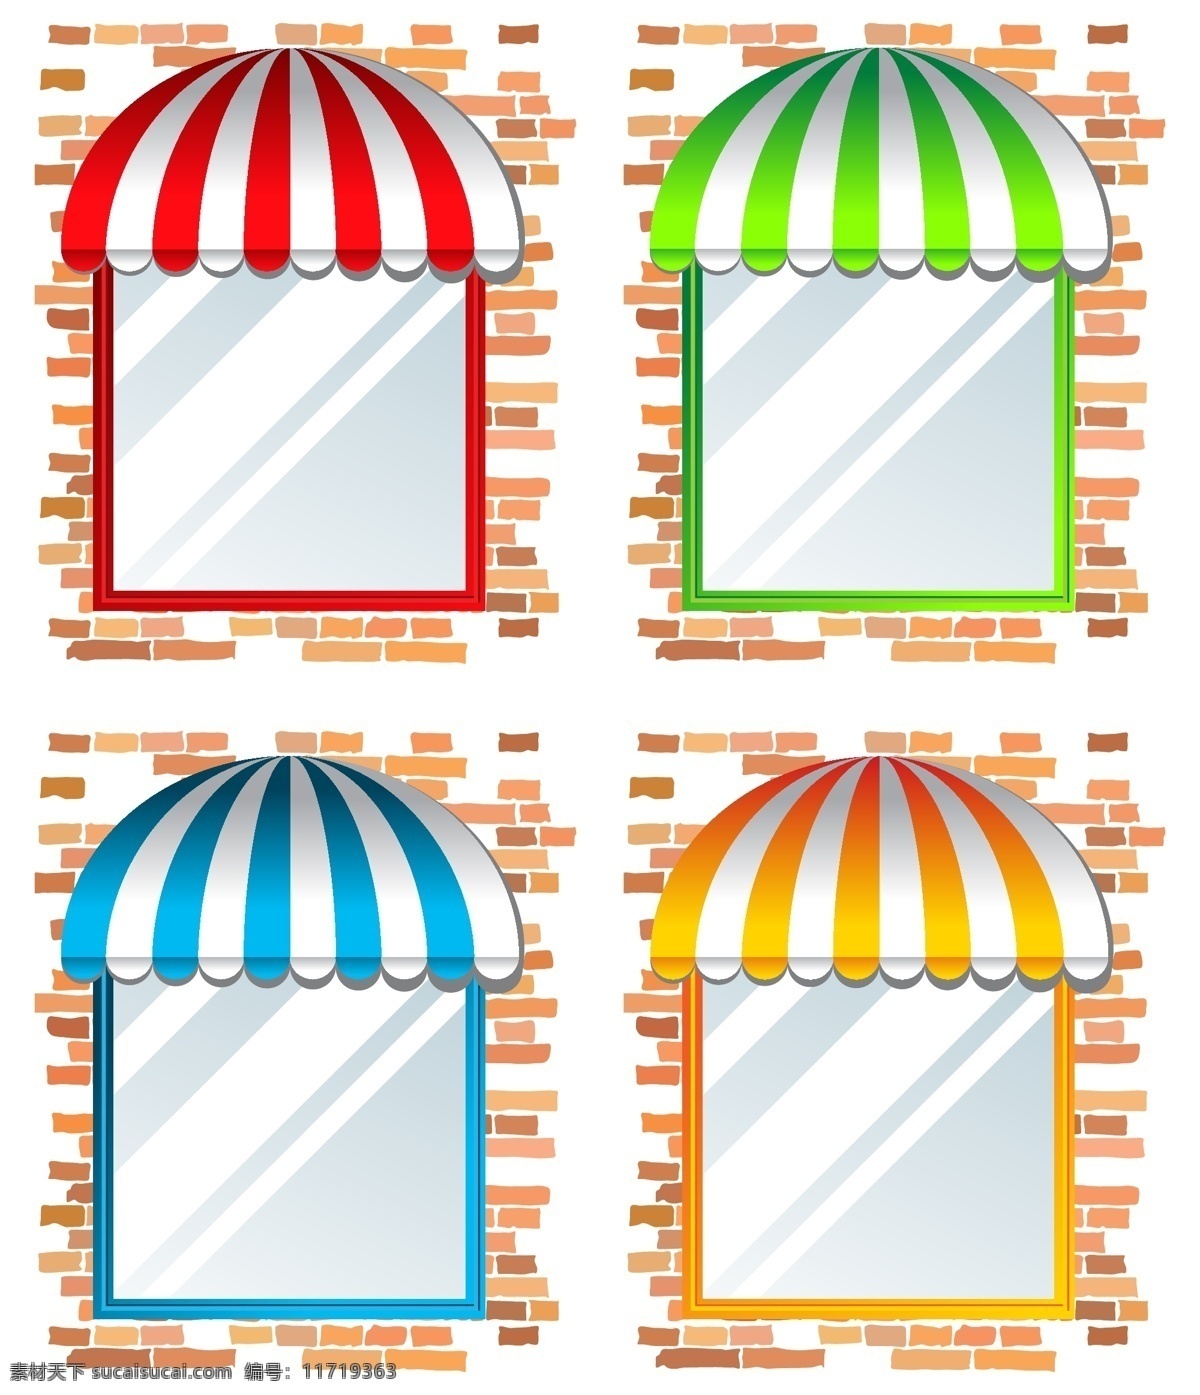 矢量 窗口 彩色 雨蓬 设计素材 窗户 窗台 矢量素材 篷子 海报 其他海报设计